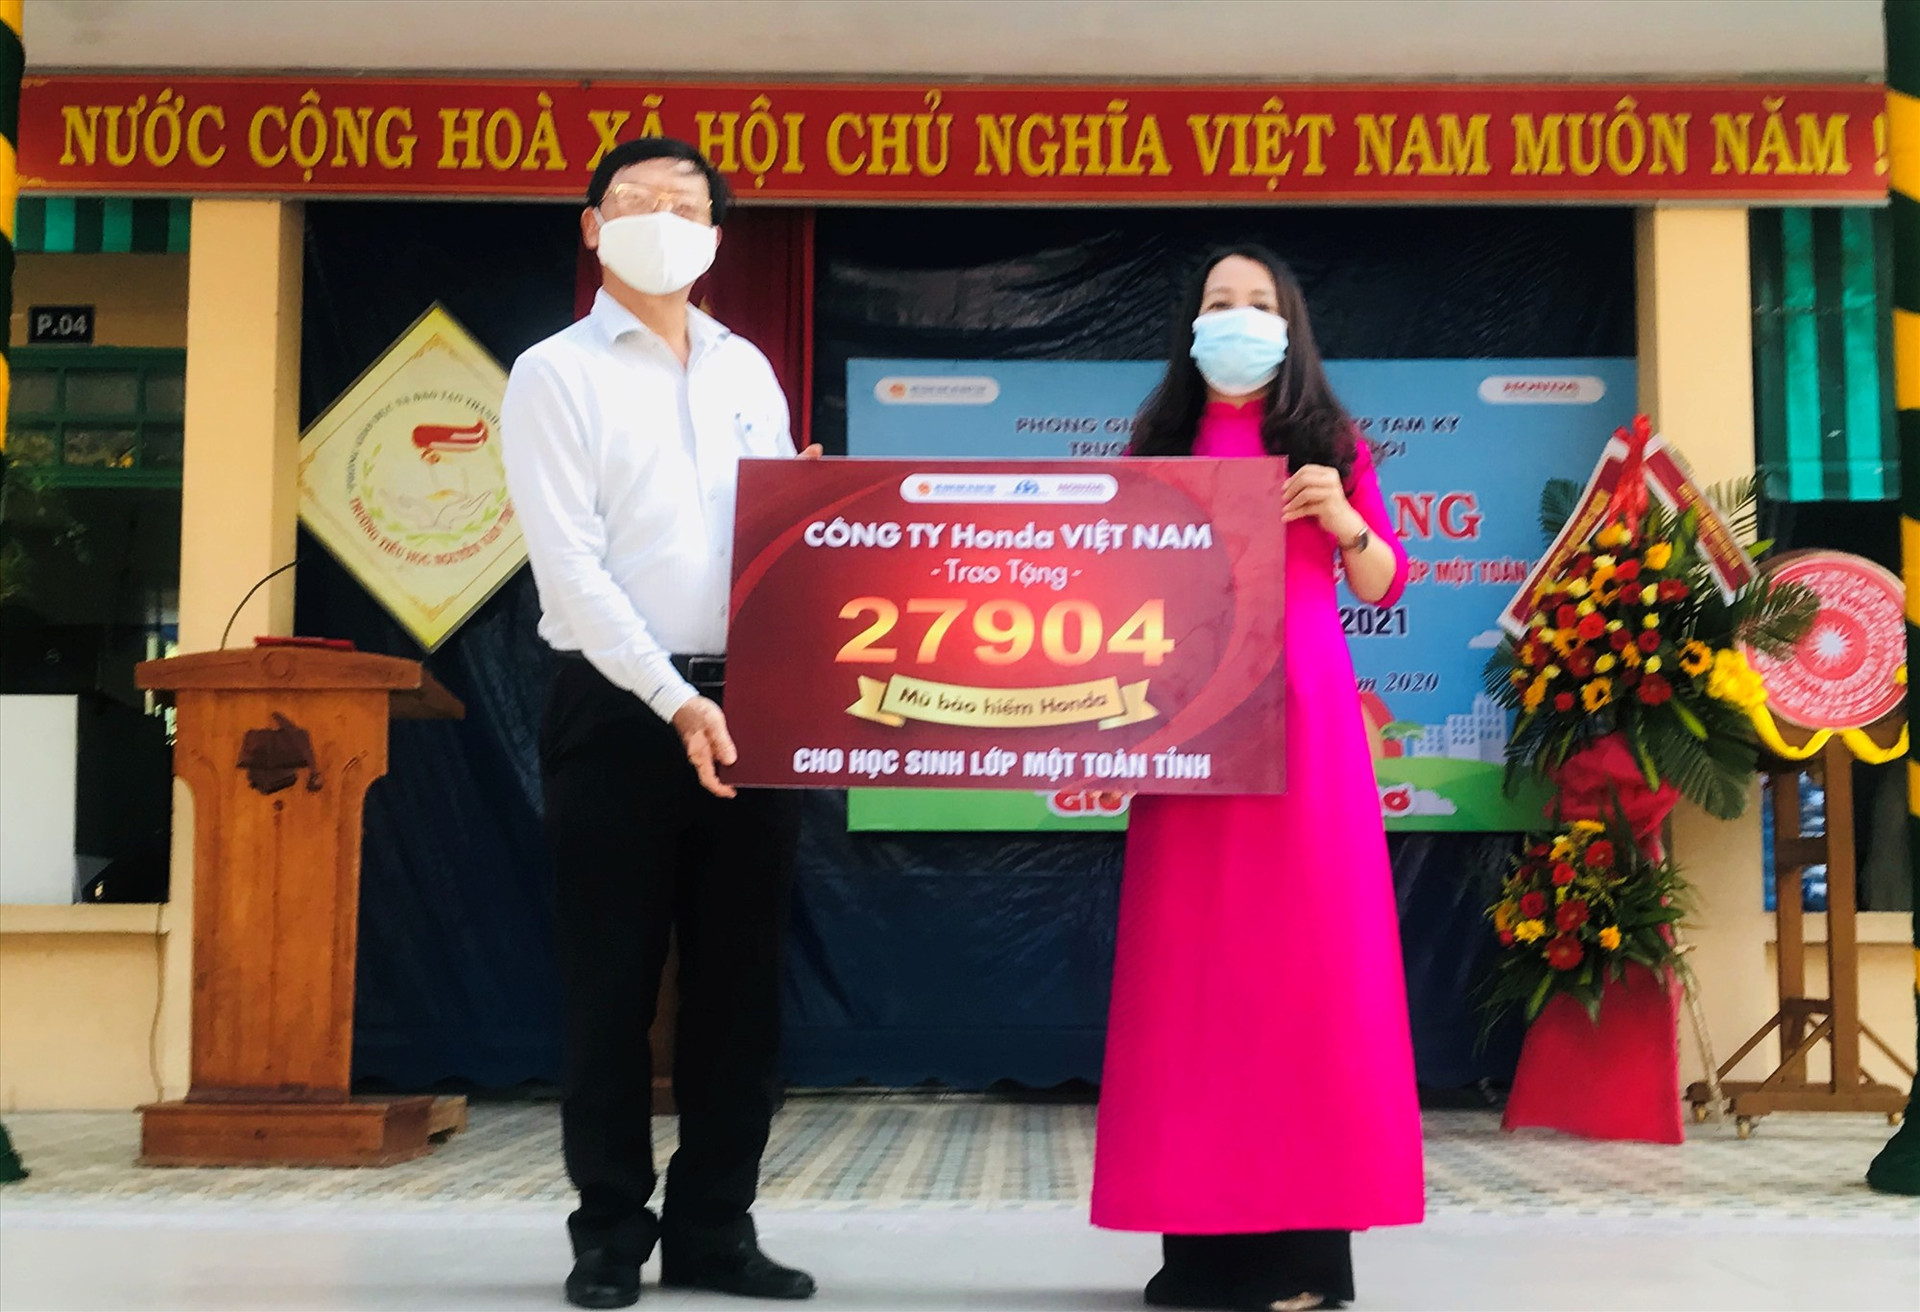 Hiệu trưởng Trường Tiểu học Nguyễn Văn Trỗi, Tam Kỳ (phải) tiếp nhận bảng tượng trưng 27.904 mũ bảo hiểm của Công ty Honda Việt Nam từ Ban An toàn giao thông tỉnh trao tặng từ cho học sinh lớp 1 năm học 2020-2021 tại Quảng Nam.